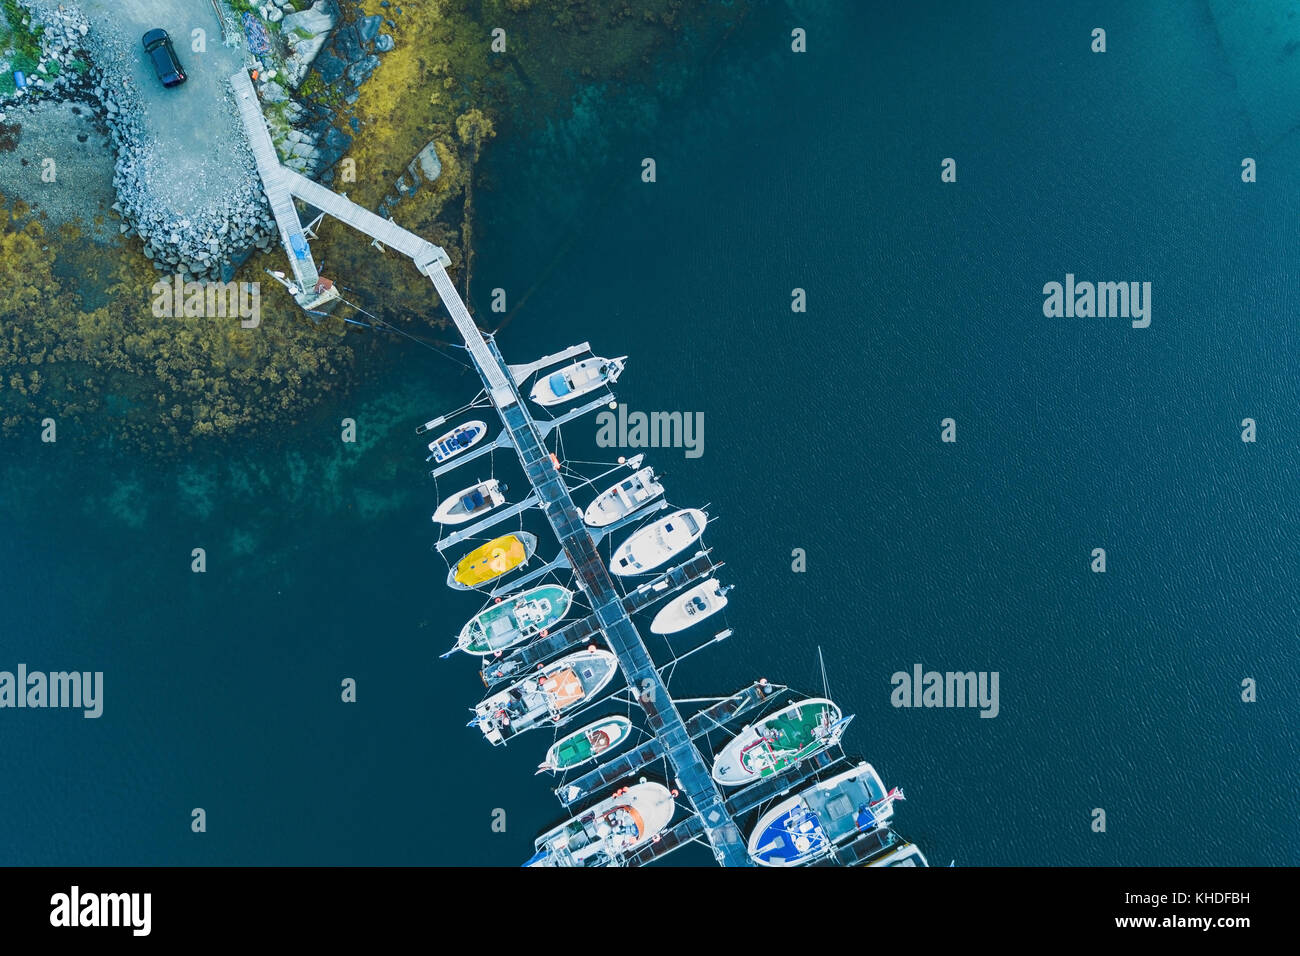 Vue aérienne de l'embarcadère des bateaux et de la partie supérieure de drone Banque D'Images